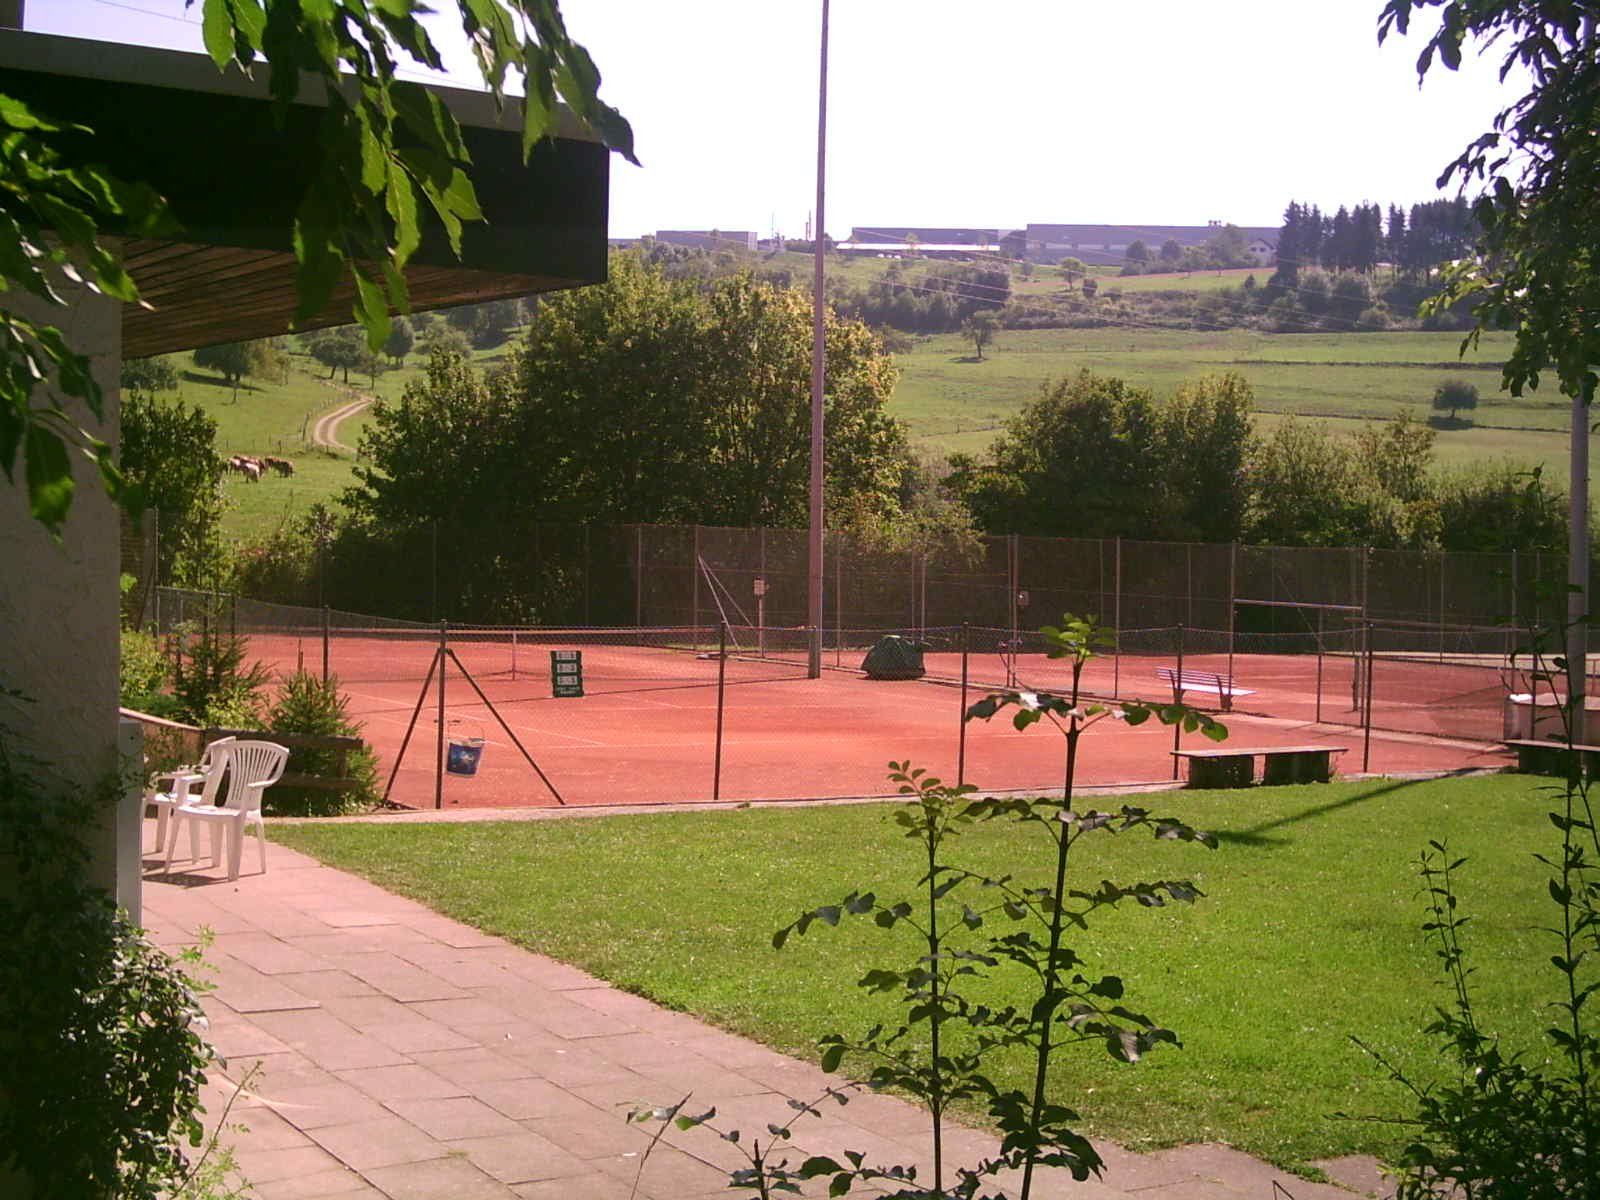  Tennisplätze in Schopfloch - das Bild wird mit einem Klick vergrößert 